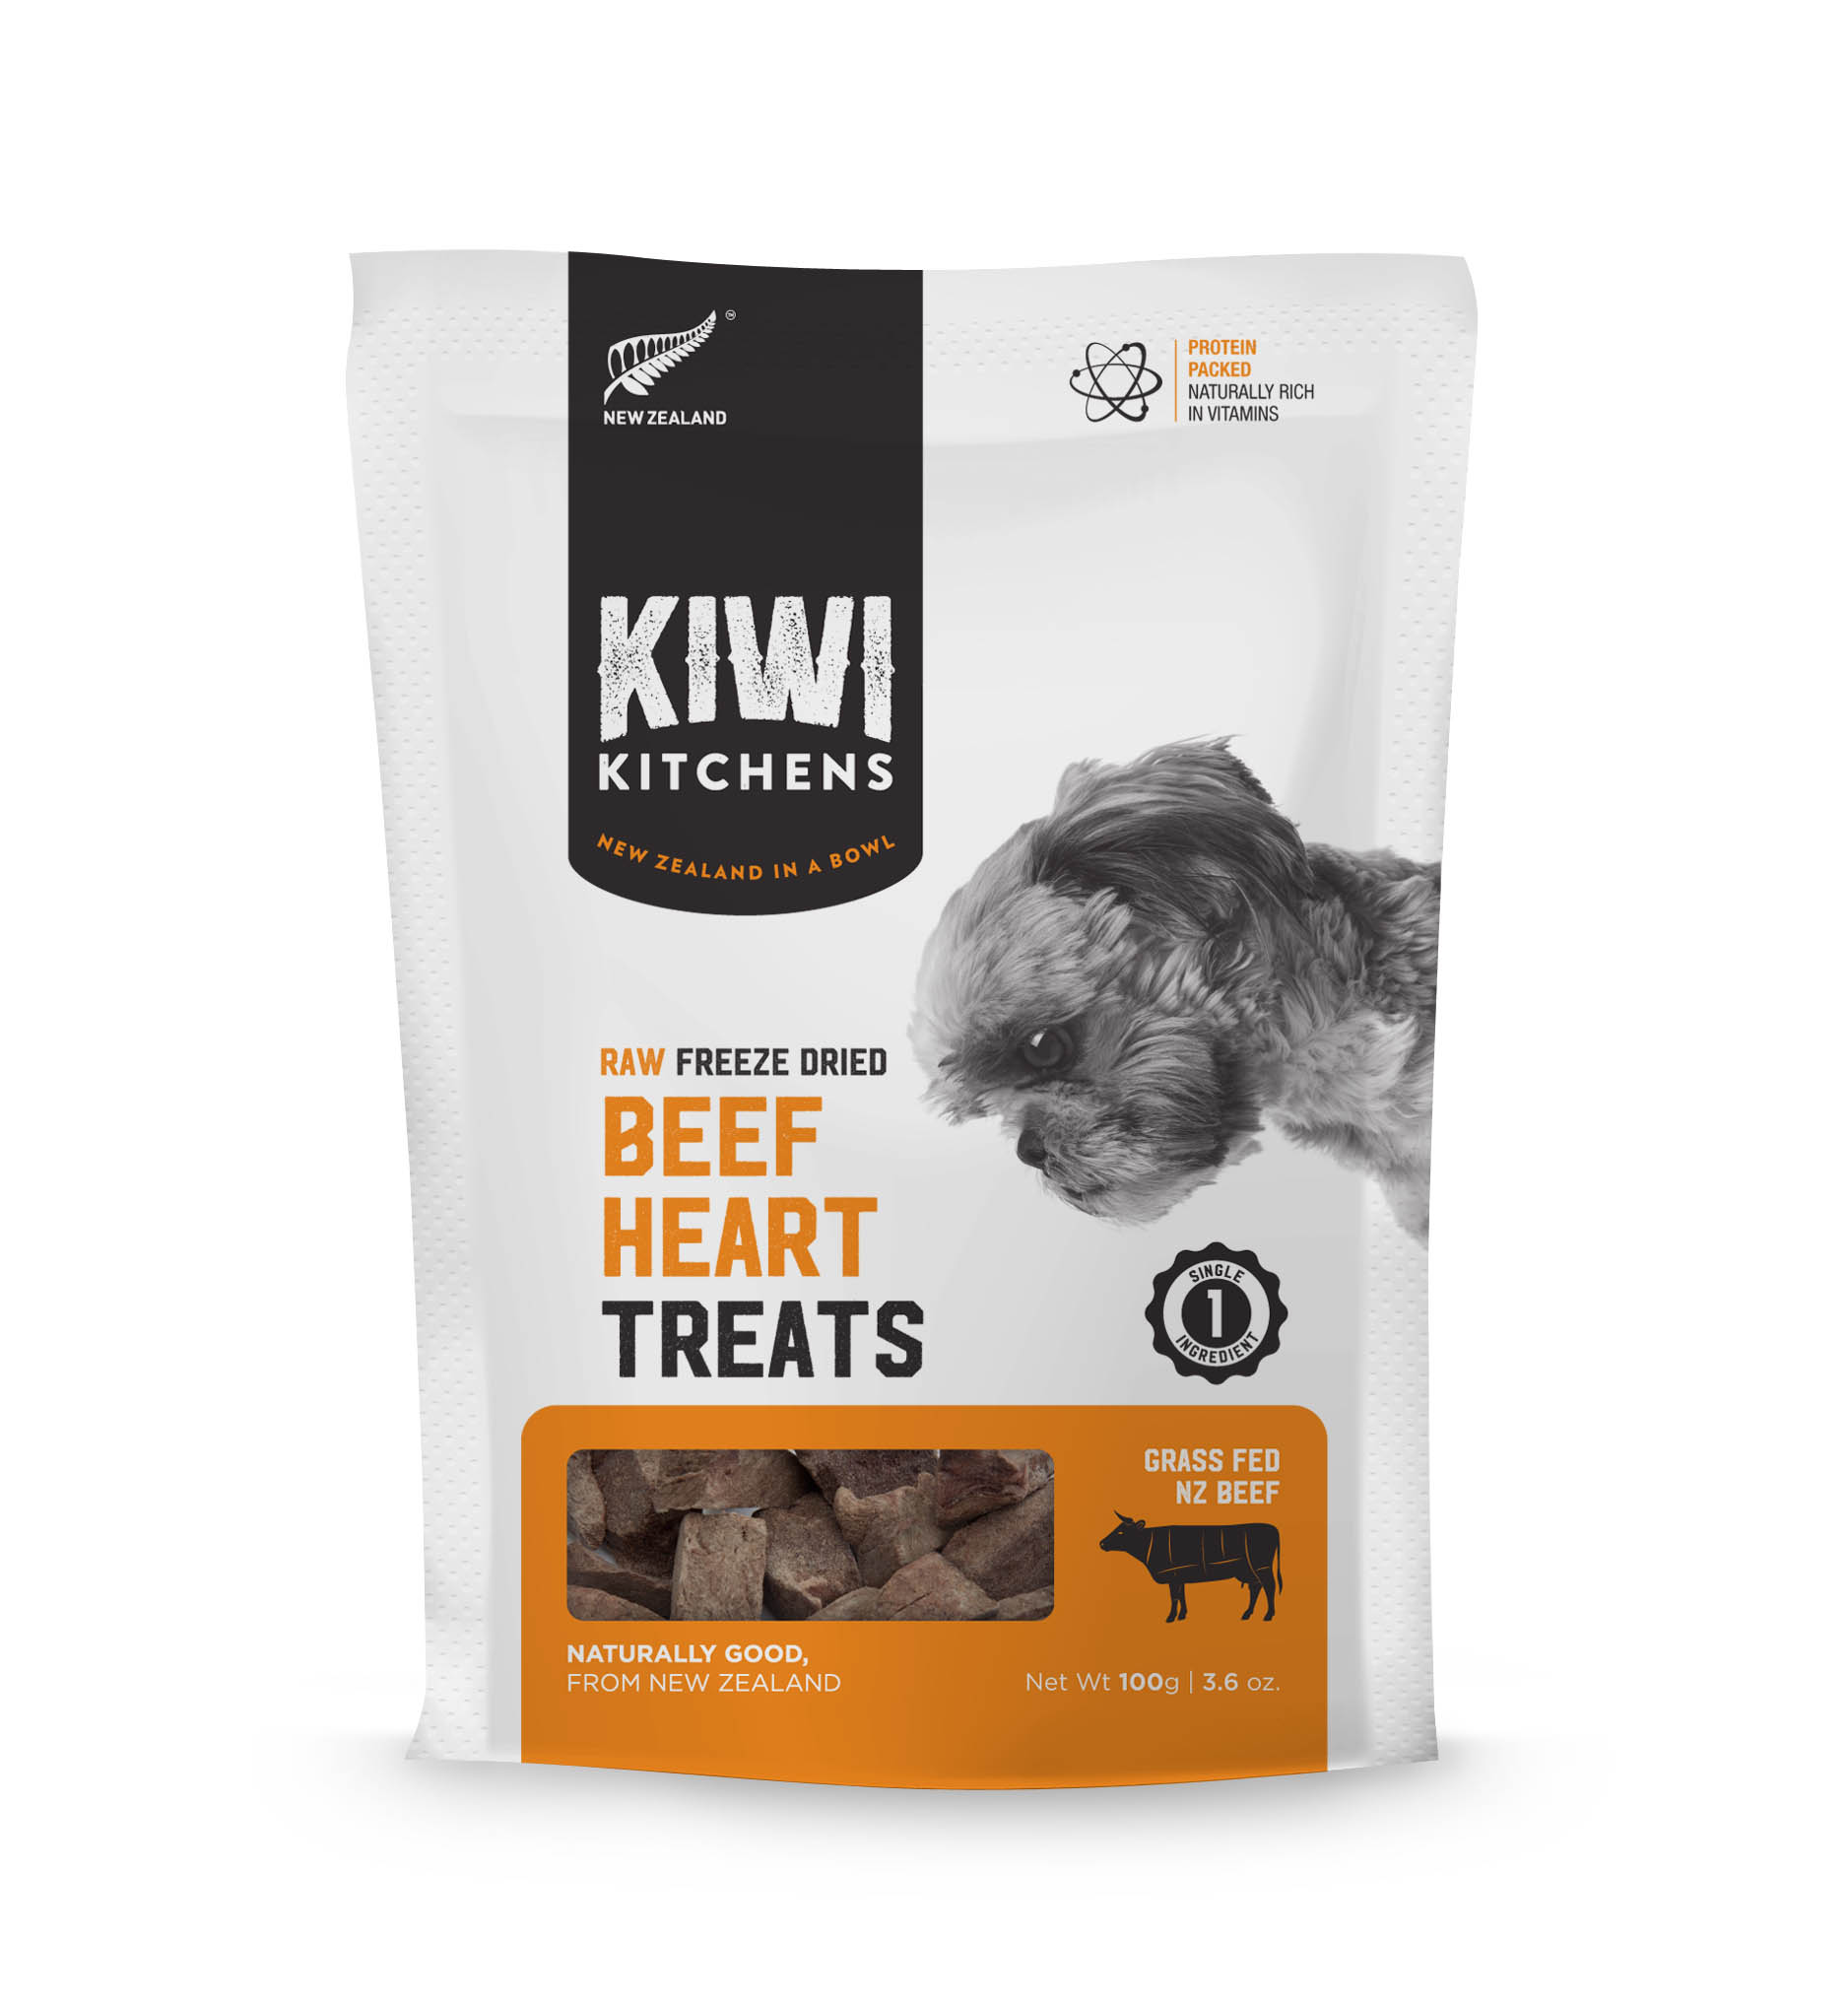 奇異廚房 純牛心
Kiwi Kitchens Treat - Beef Heart